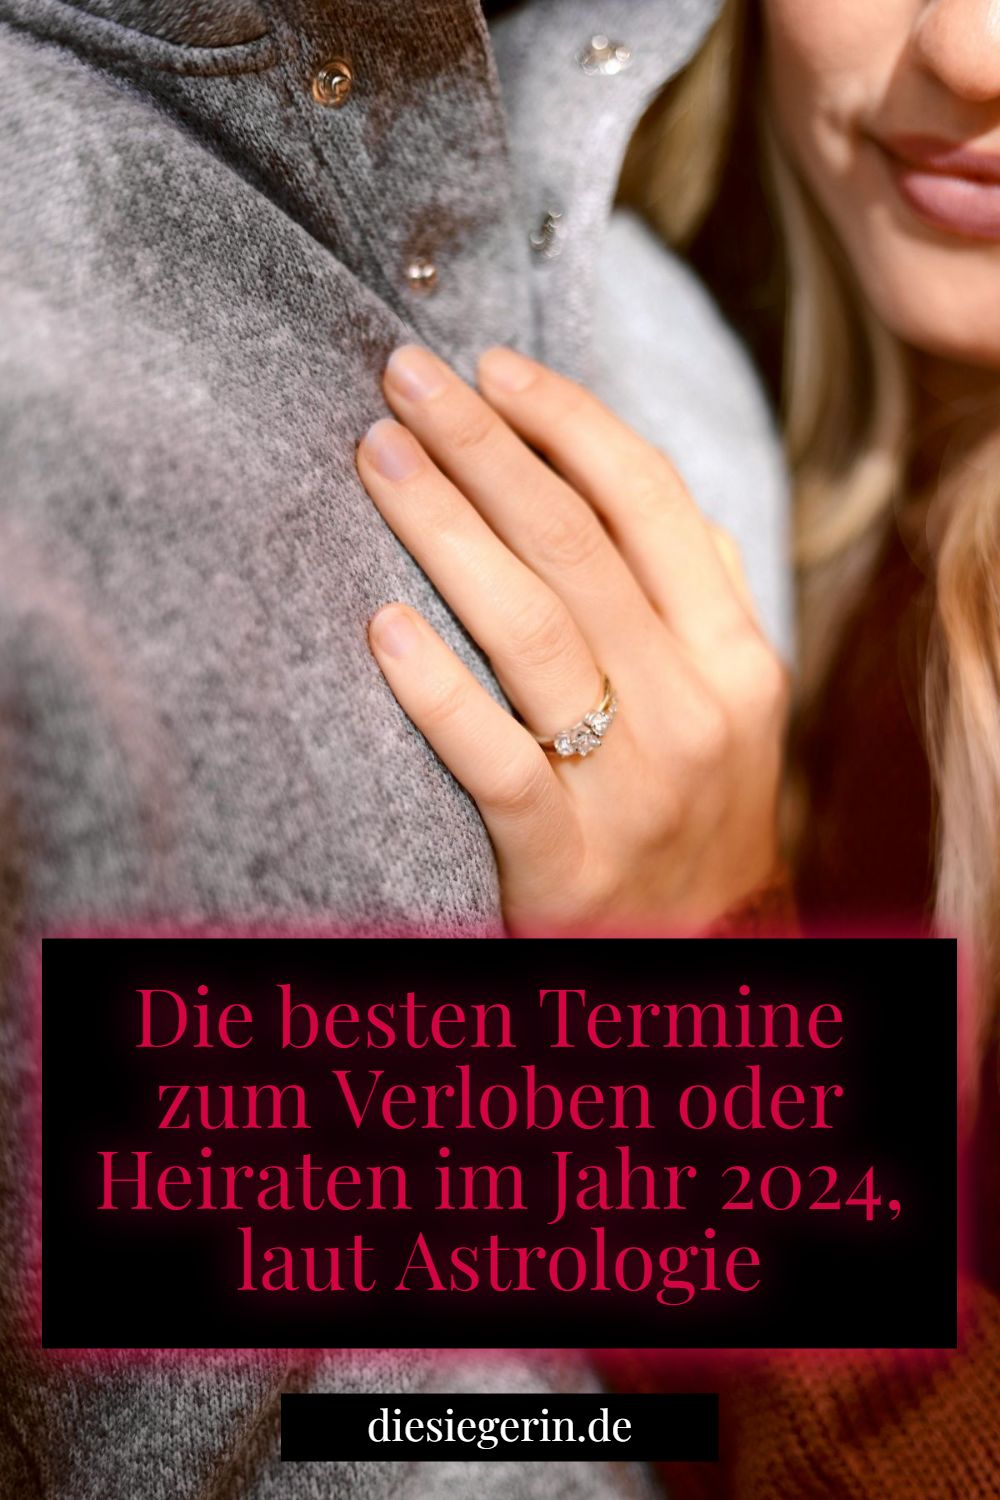 Die besten Termine zum Verloben oder Heiraten im Jahr 2024, laut Astrologie